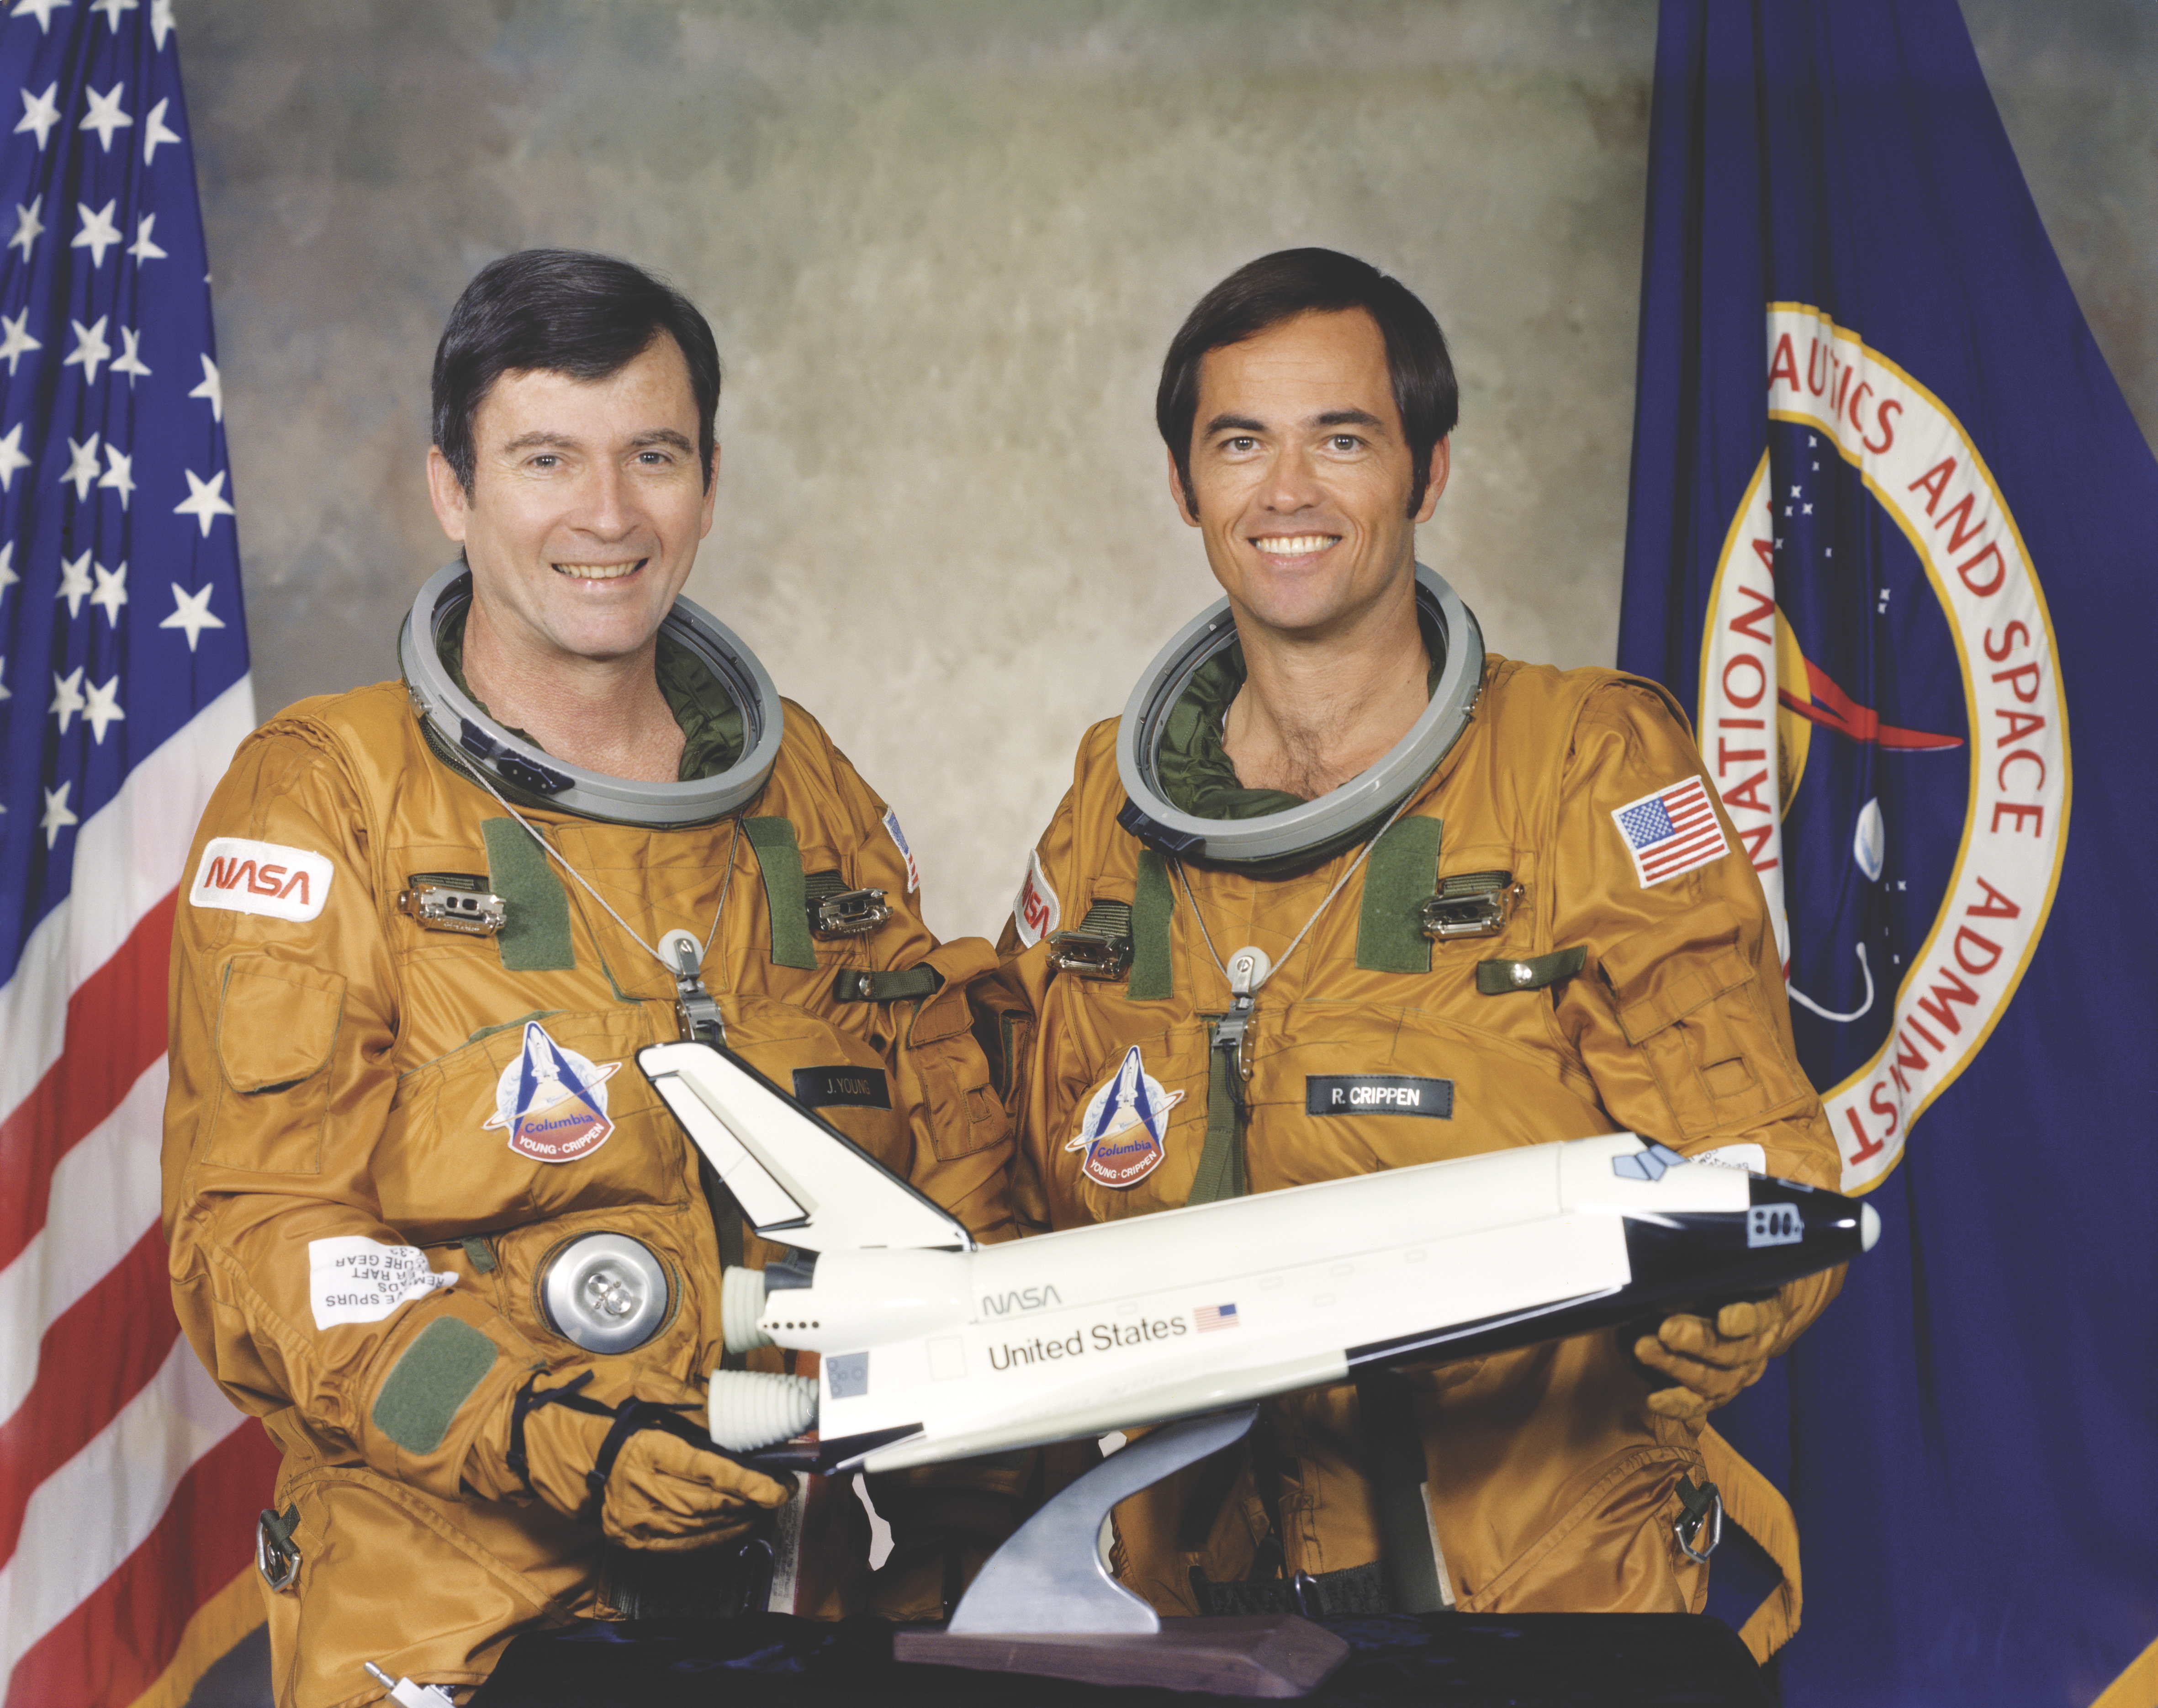 Первый полет американского космонавта. Шаттл Колумбия STS-1 1981. Спейс шаттл Колумбия 1981.